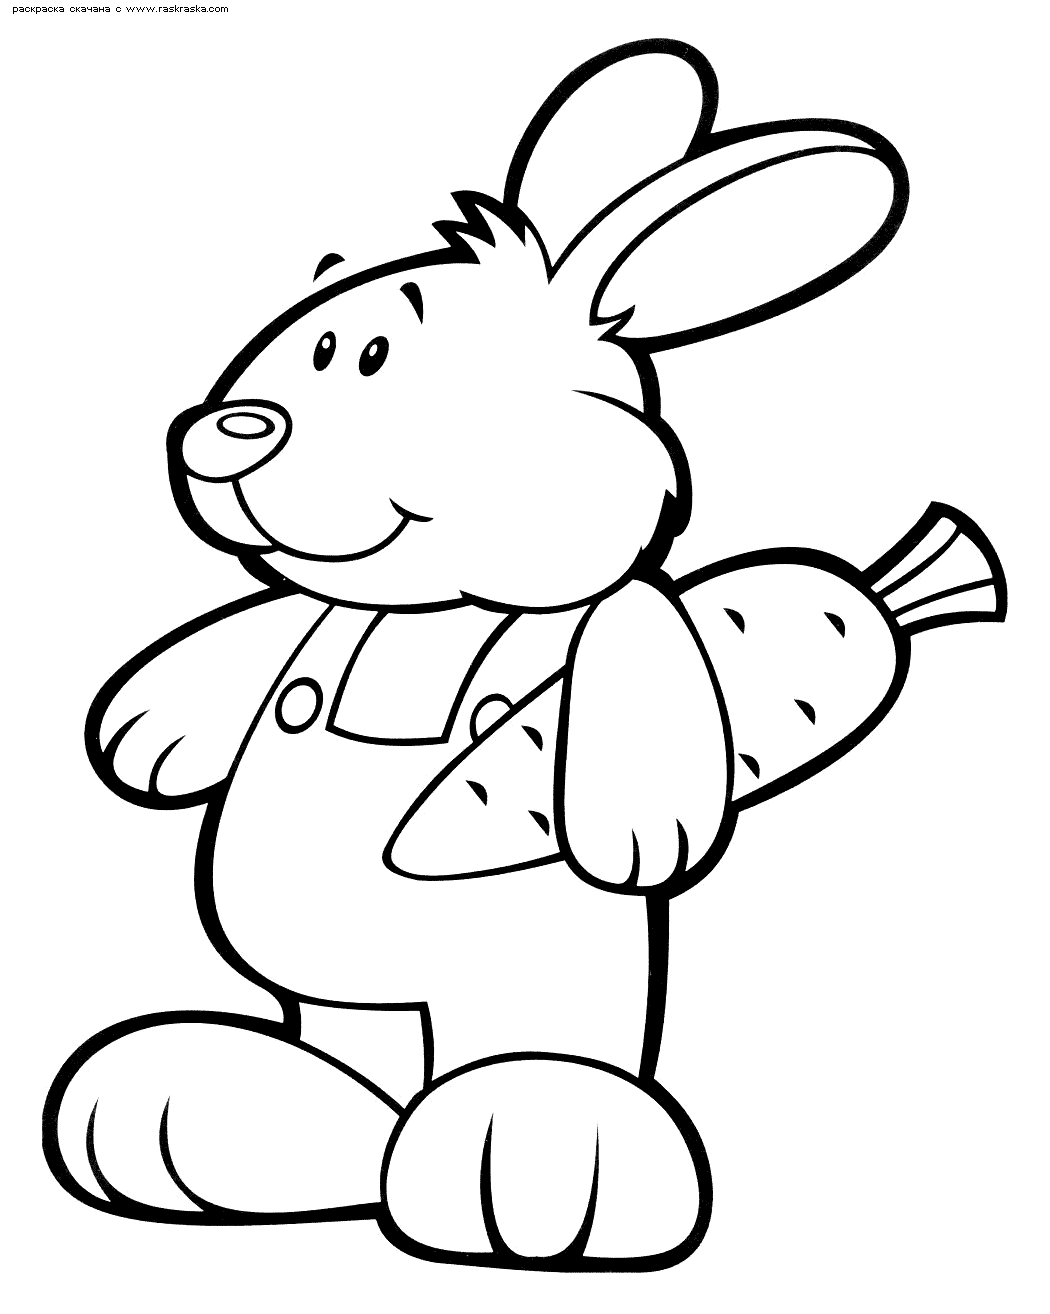 Название: Раскраска Раскраска Кролик с морковкой. Раскраска Игрушечный заяц раскраска для детского сада. Категория: . Теги: .